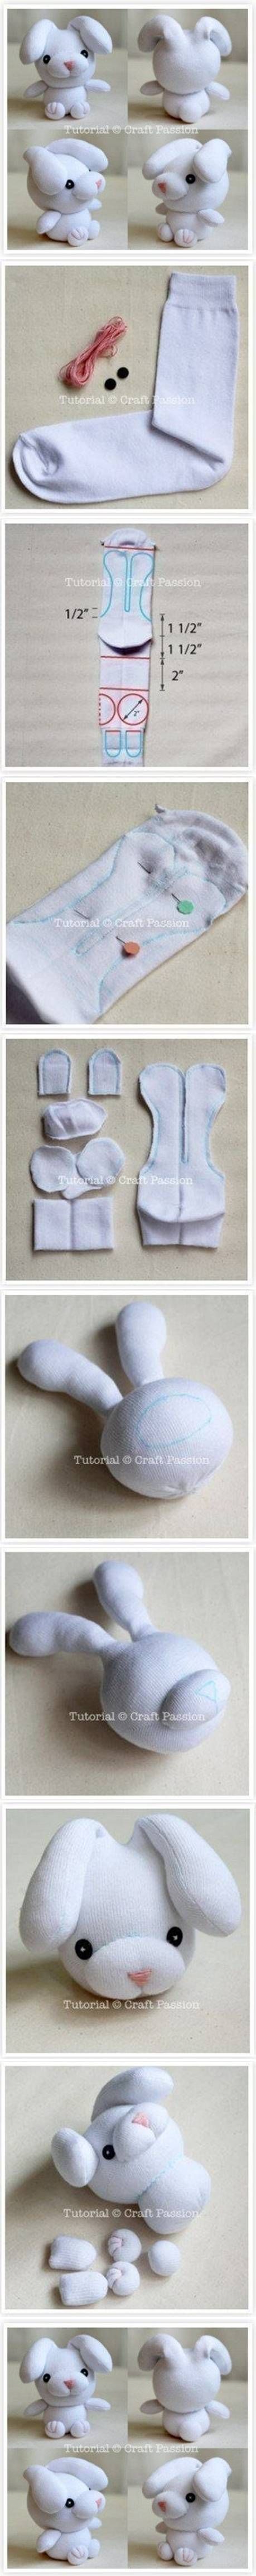 DIY Sew Sock Bunny